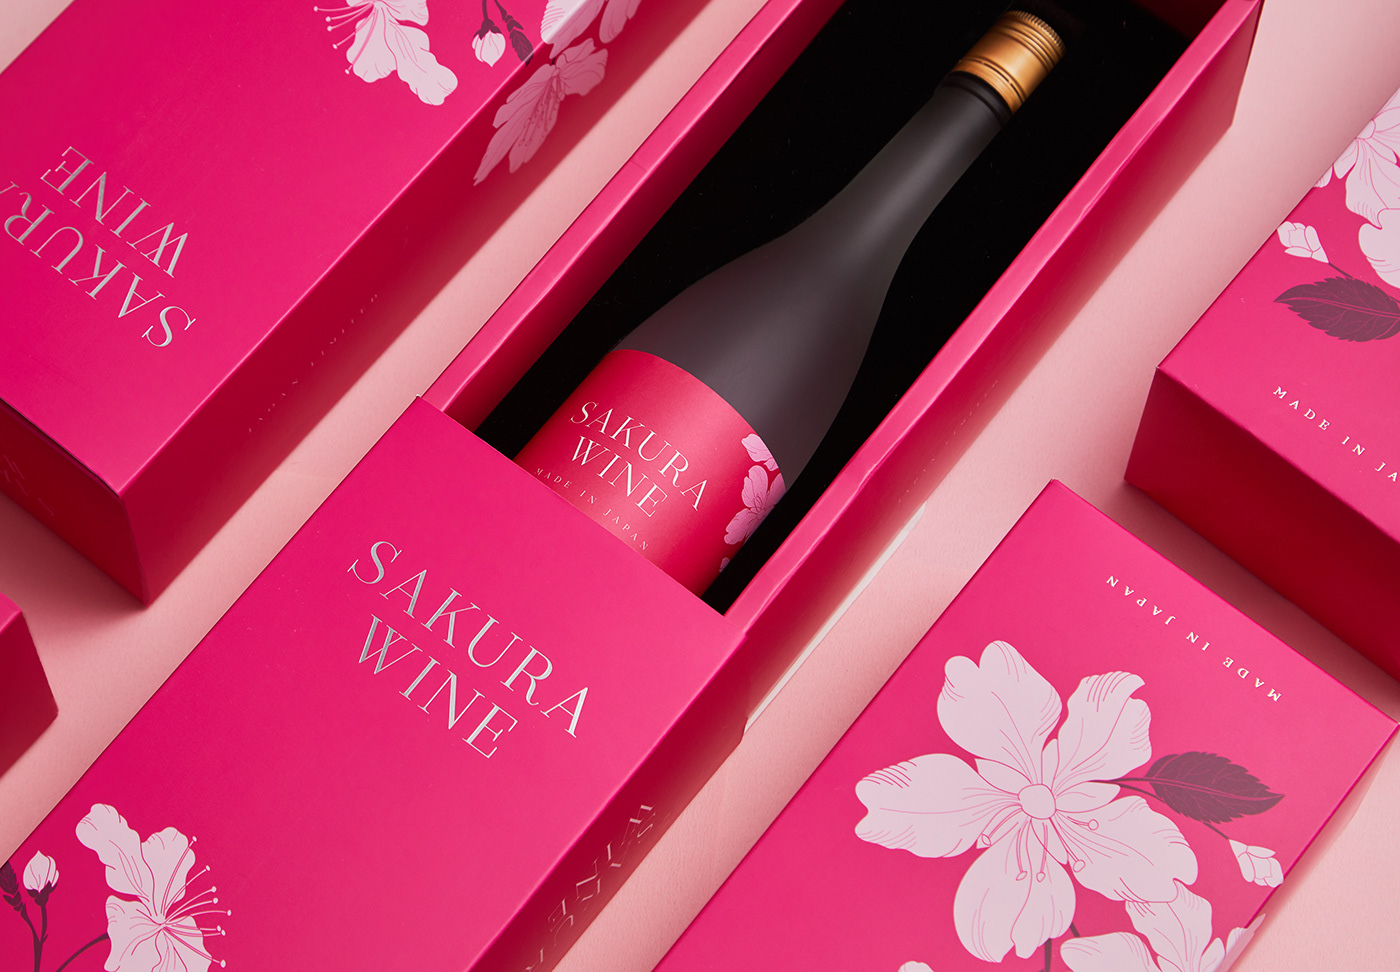 giftbox japan Packaging sakura wine 包裝 日本 櫻花 禮盒 酒瓶